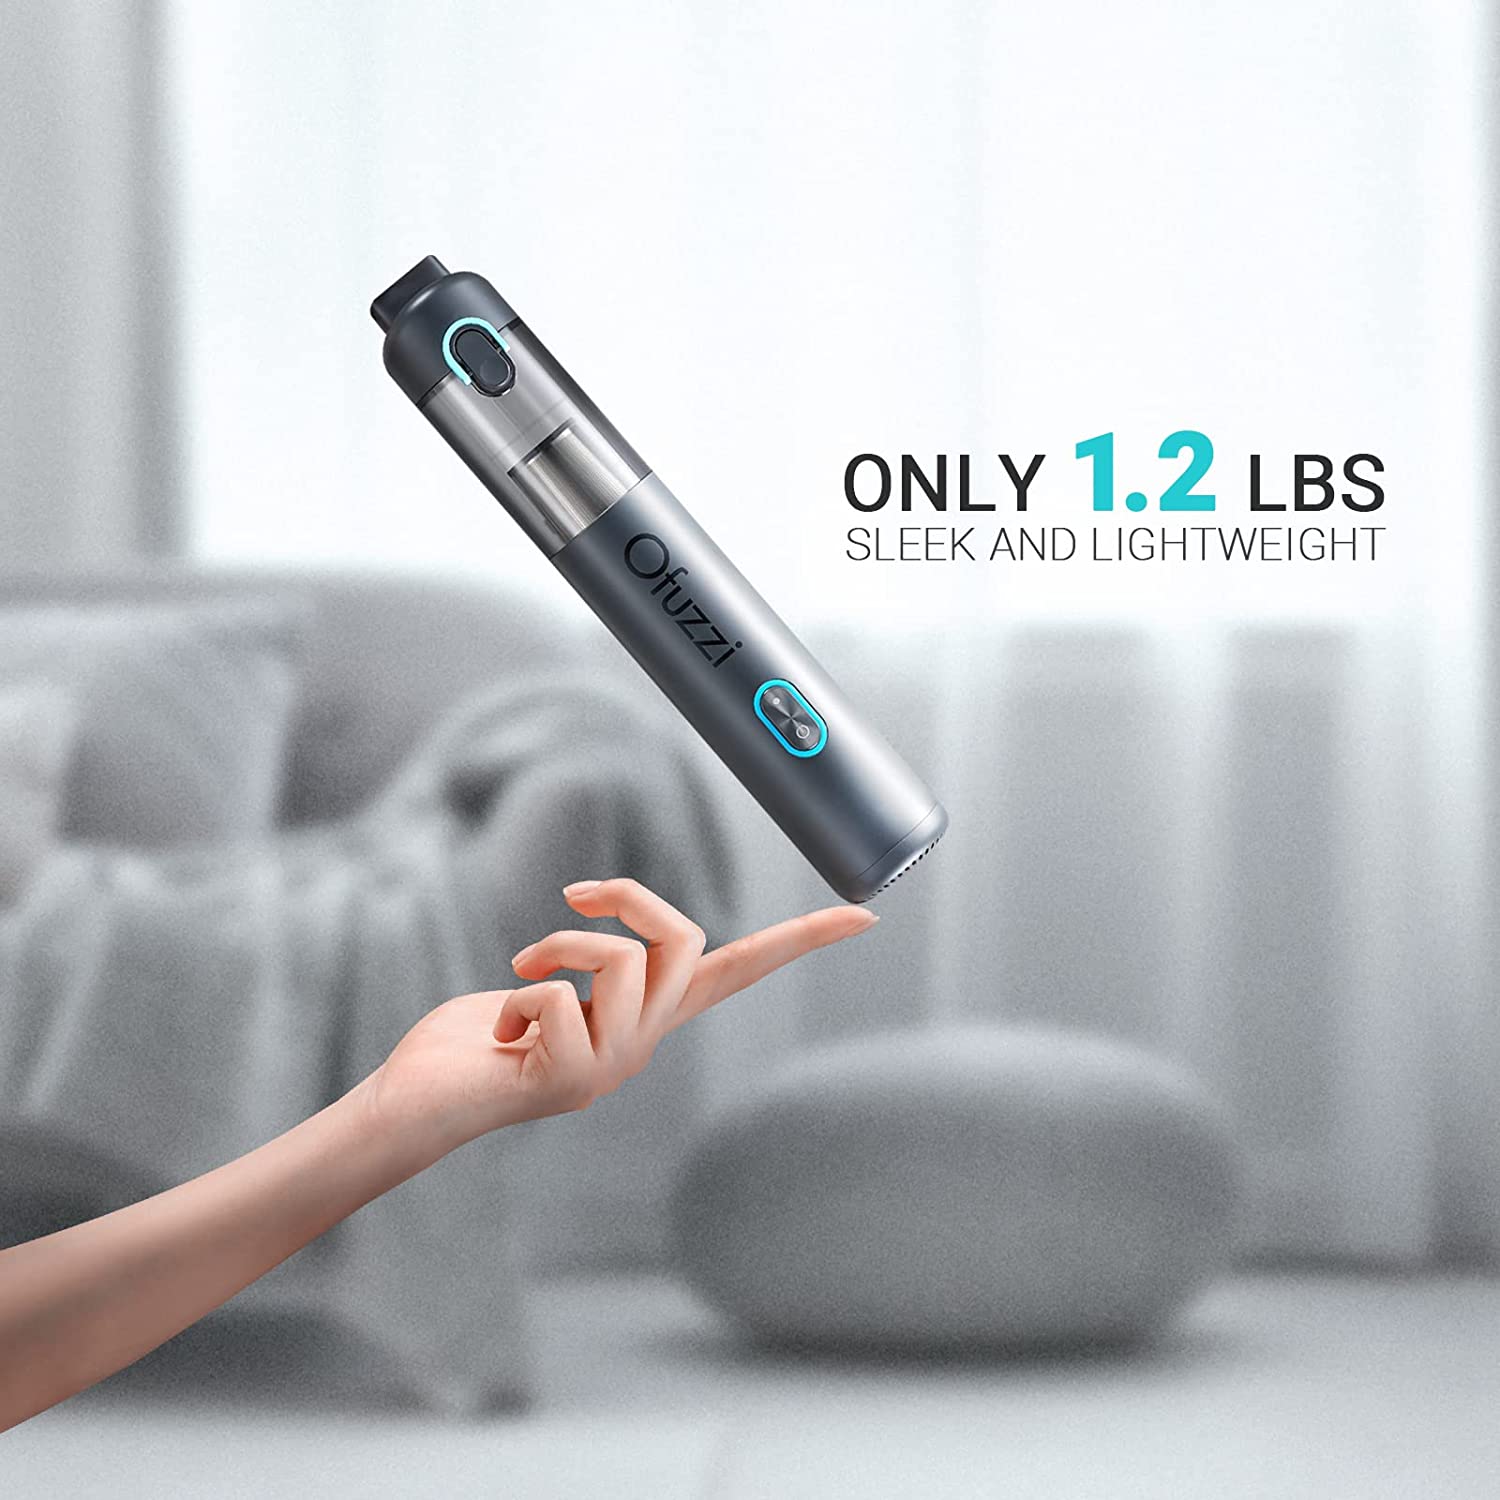  Ofuzzi H8 Apex Cordless Handheld Vacuum Cleaner